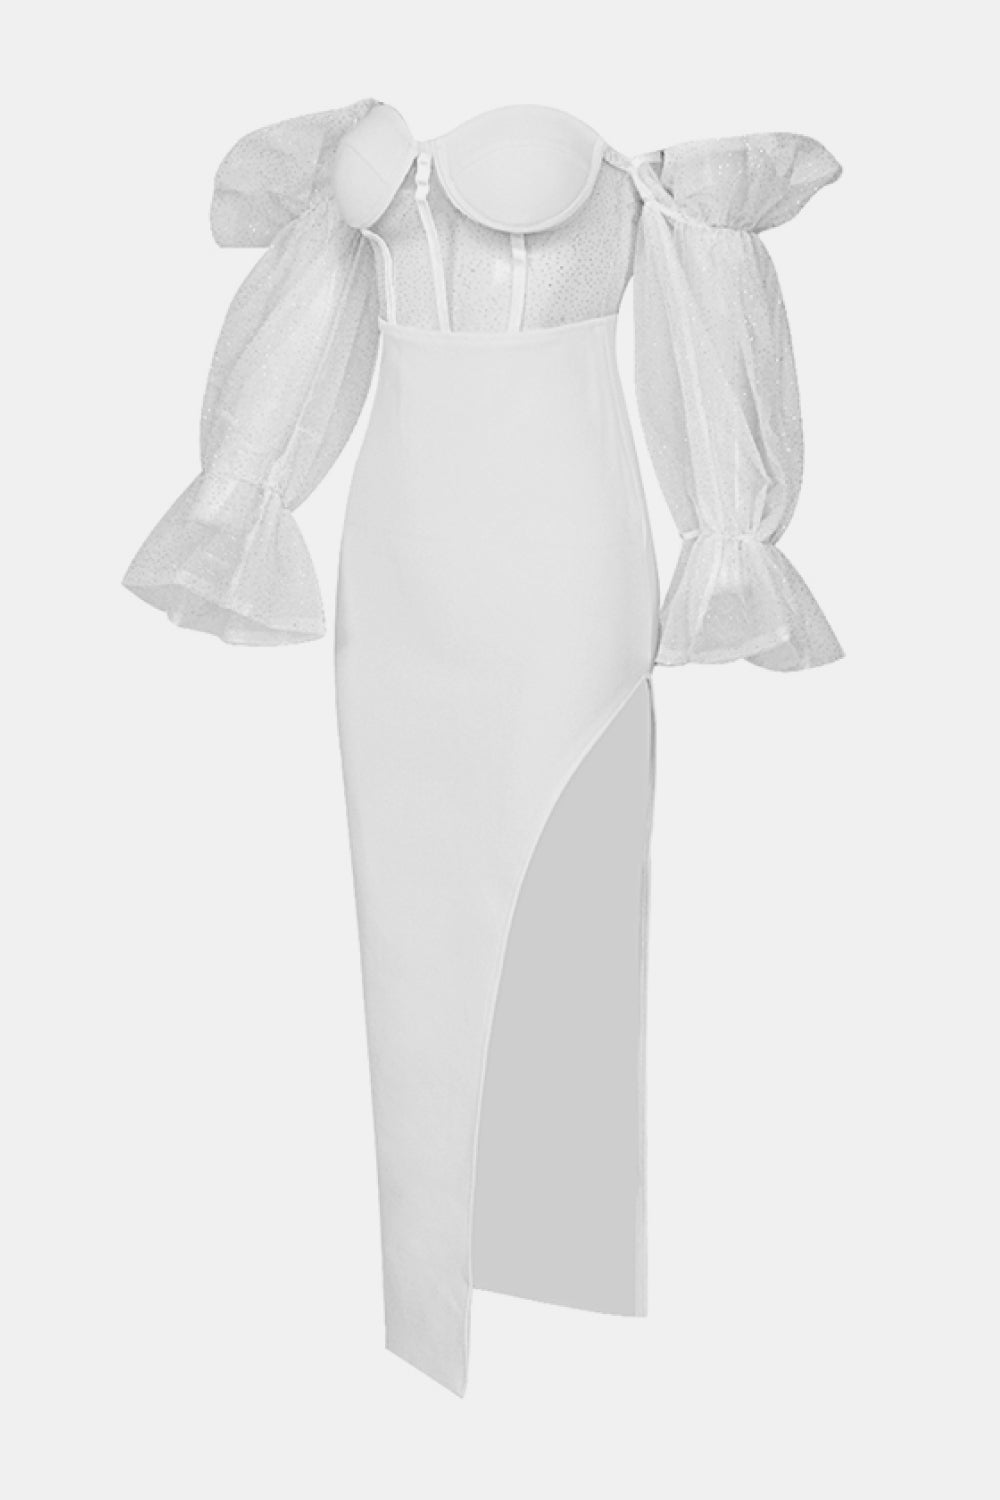 Yarn Long Sleeve Party Wedding Toast Small Dress aclosy